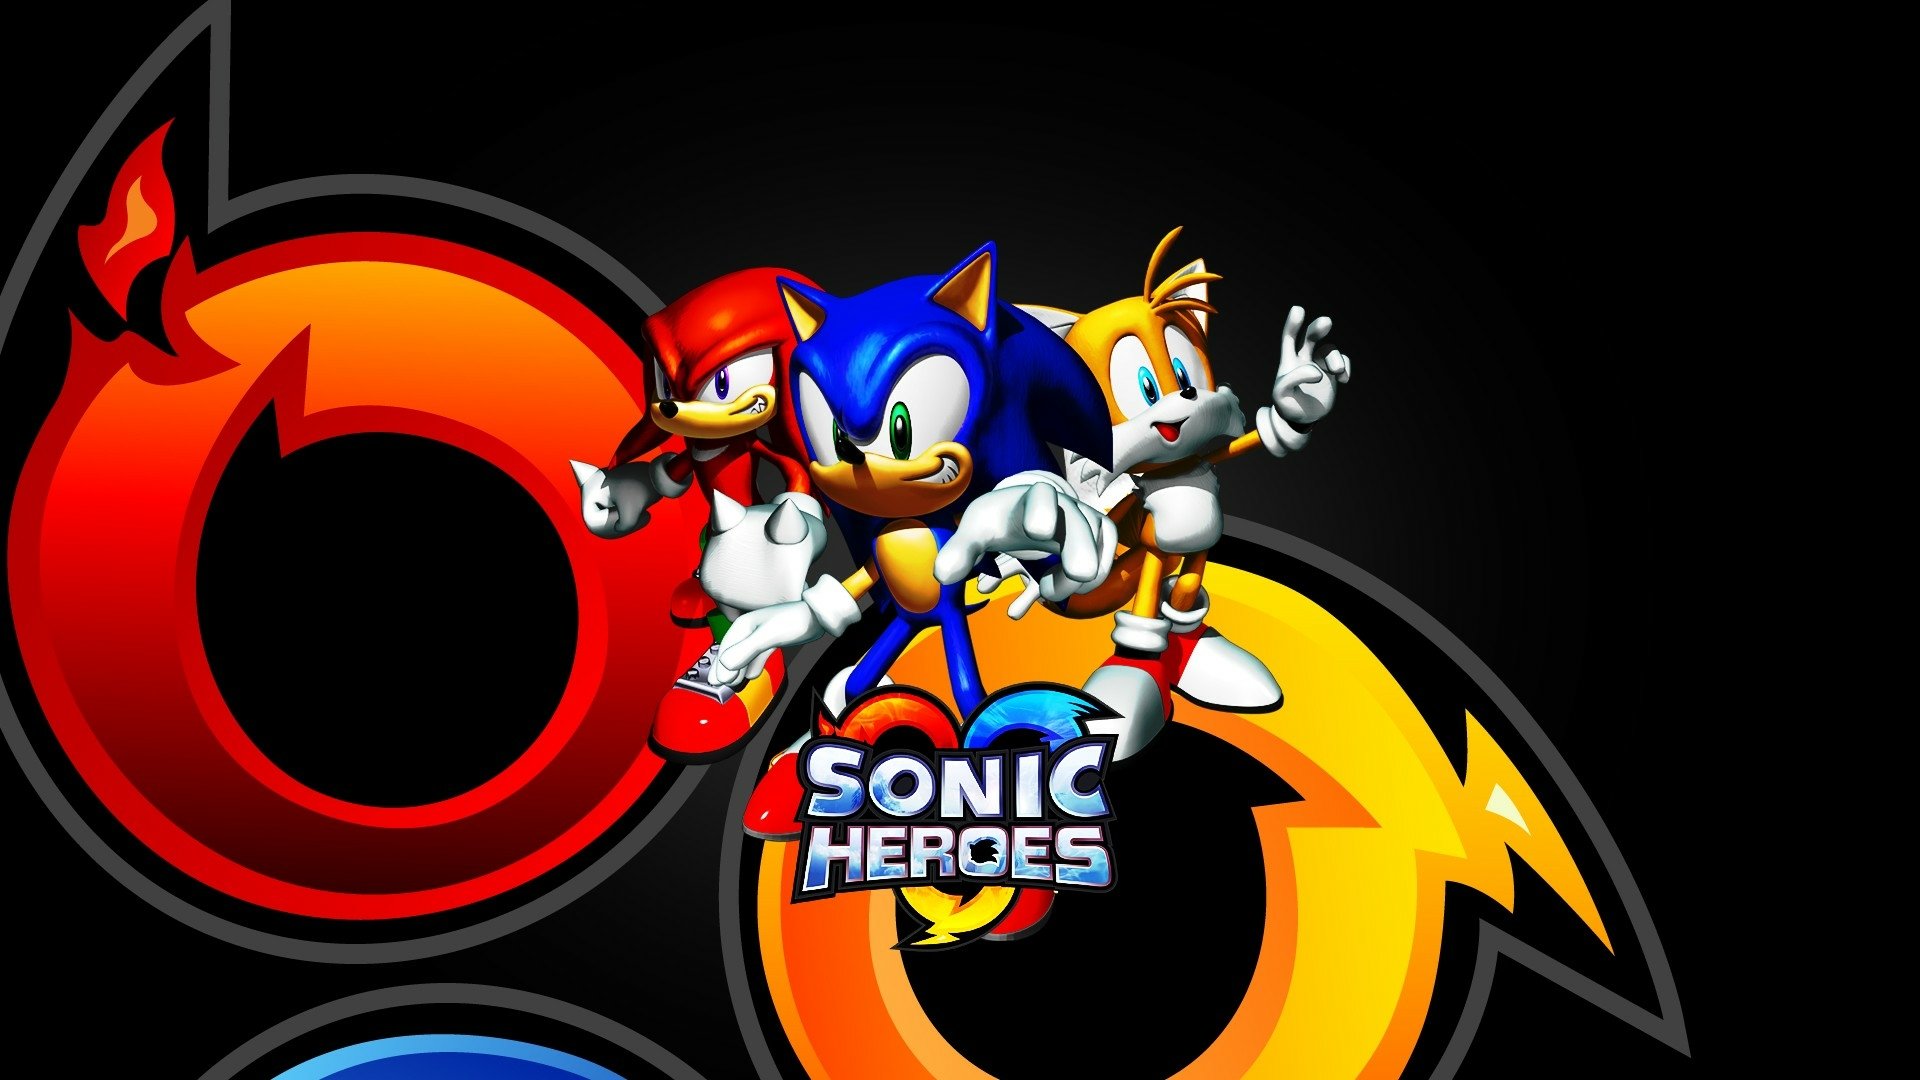 sonic the hedgehog 2 heroes